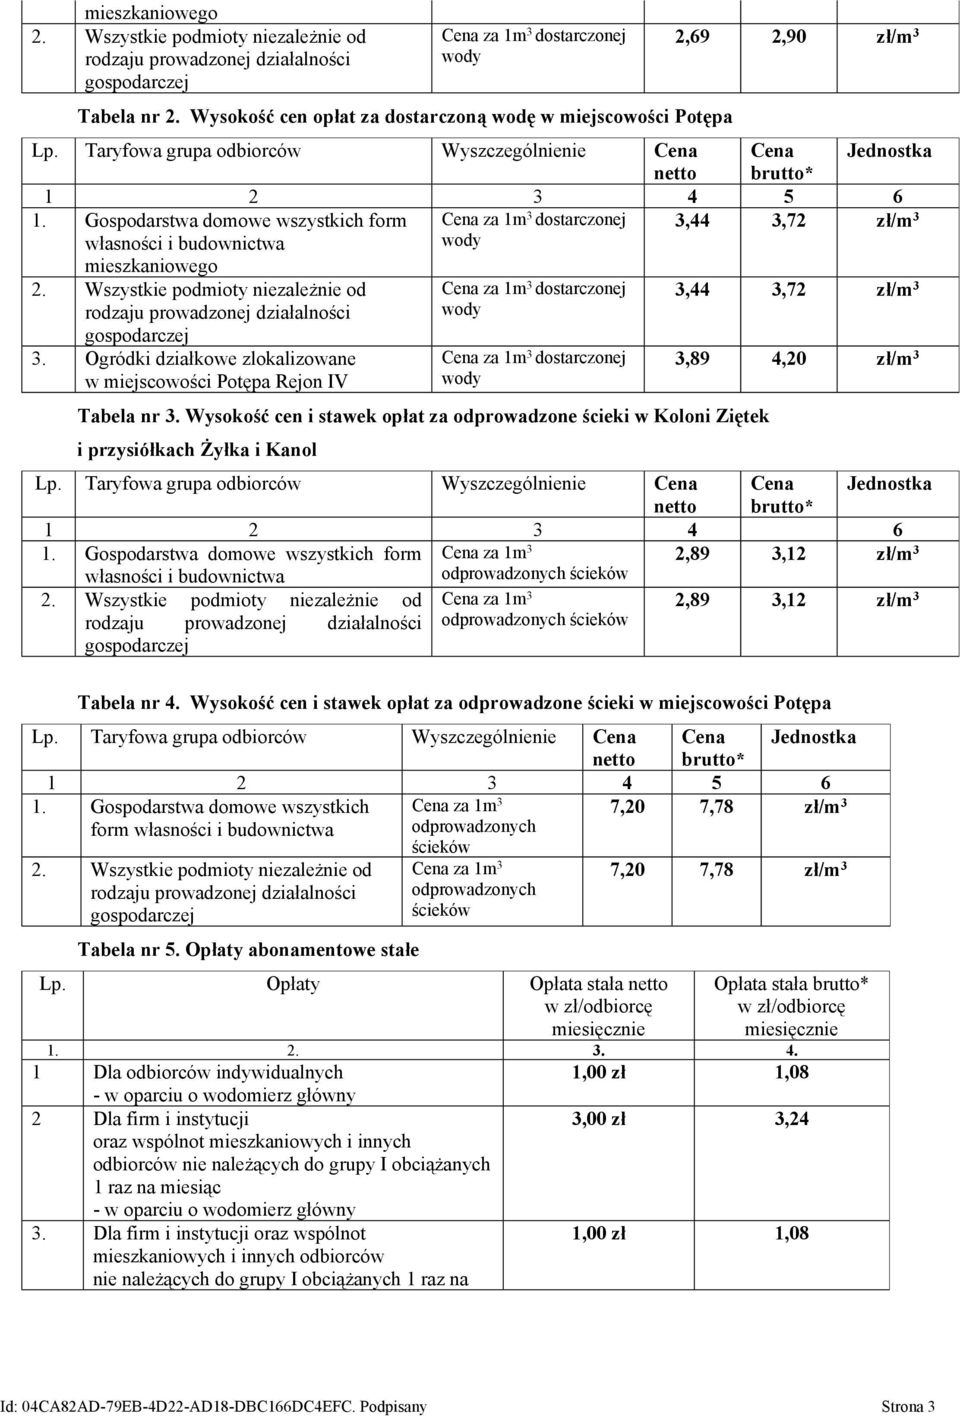 Ogródki działkowe zlokalizowane w miejscowości Potępa Rejon IV Tabela nr 3.